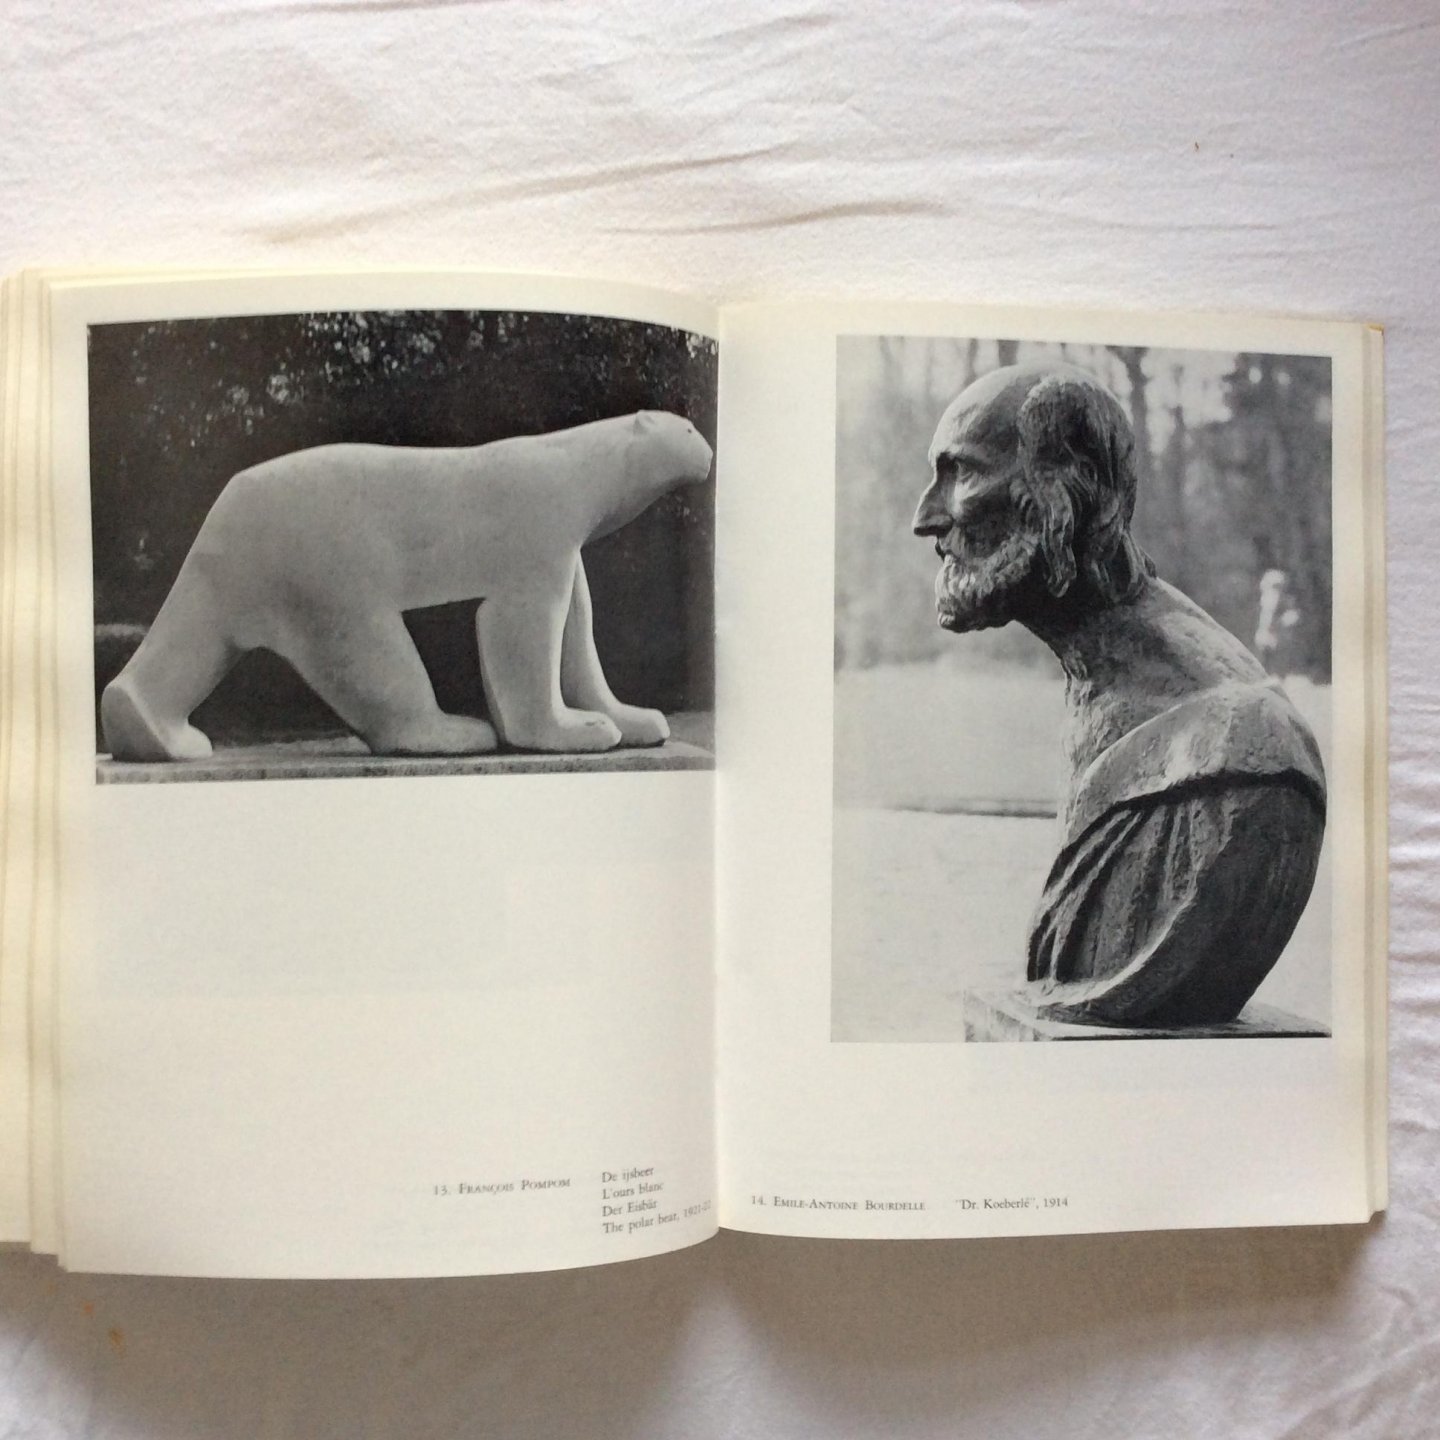  - Middelheim, katalogus van de verzameling openluchtmuseum voor beeldhouwkunst